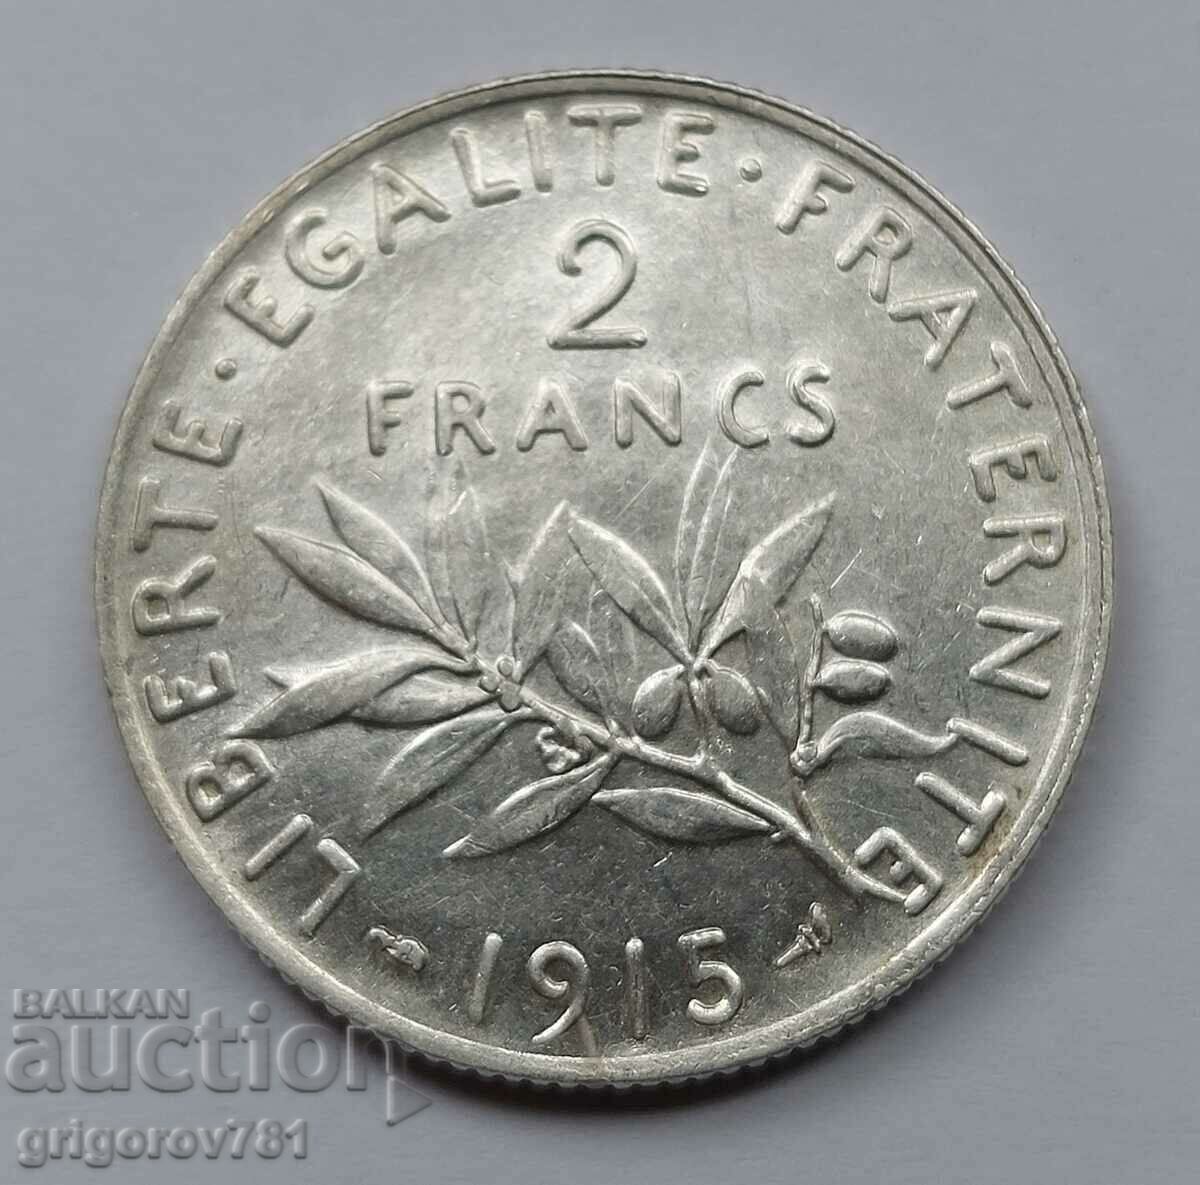 2 Φράγκα Ασήμι Γαλλία 1915 - Ασημένιο νόμισμα #116